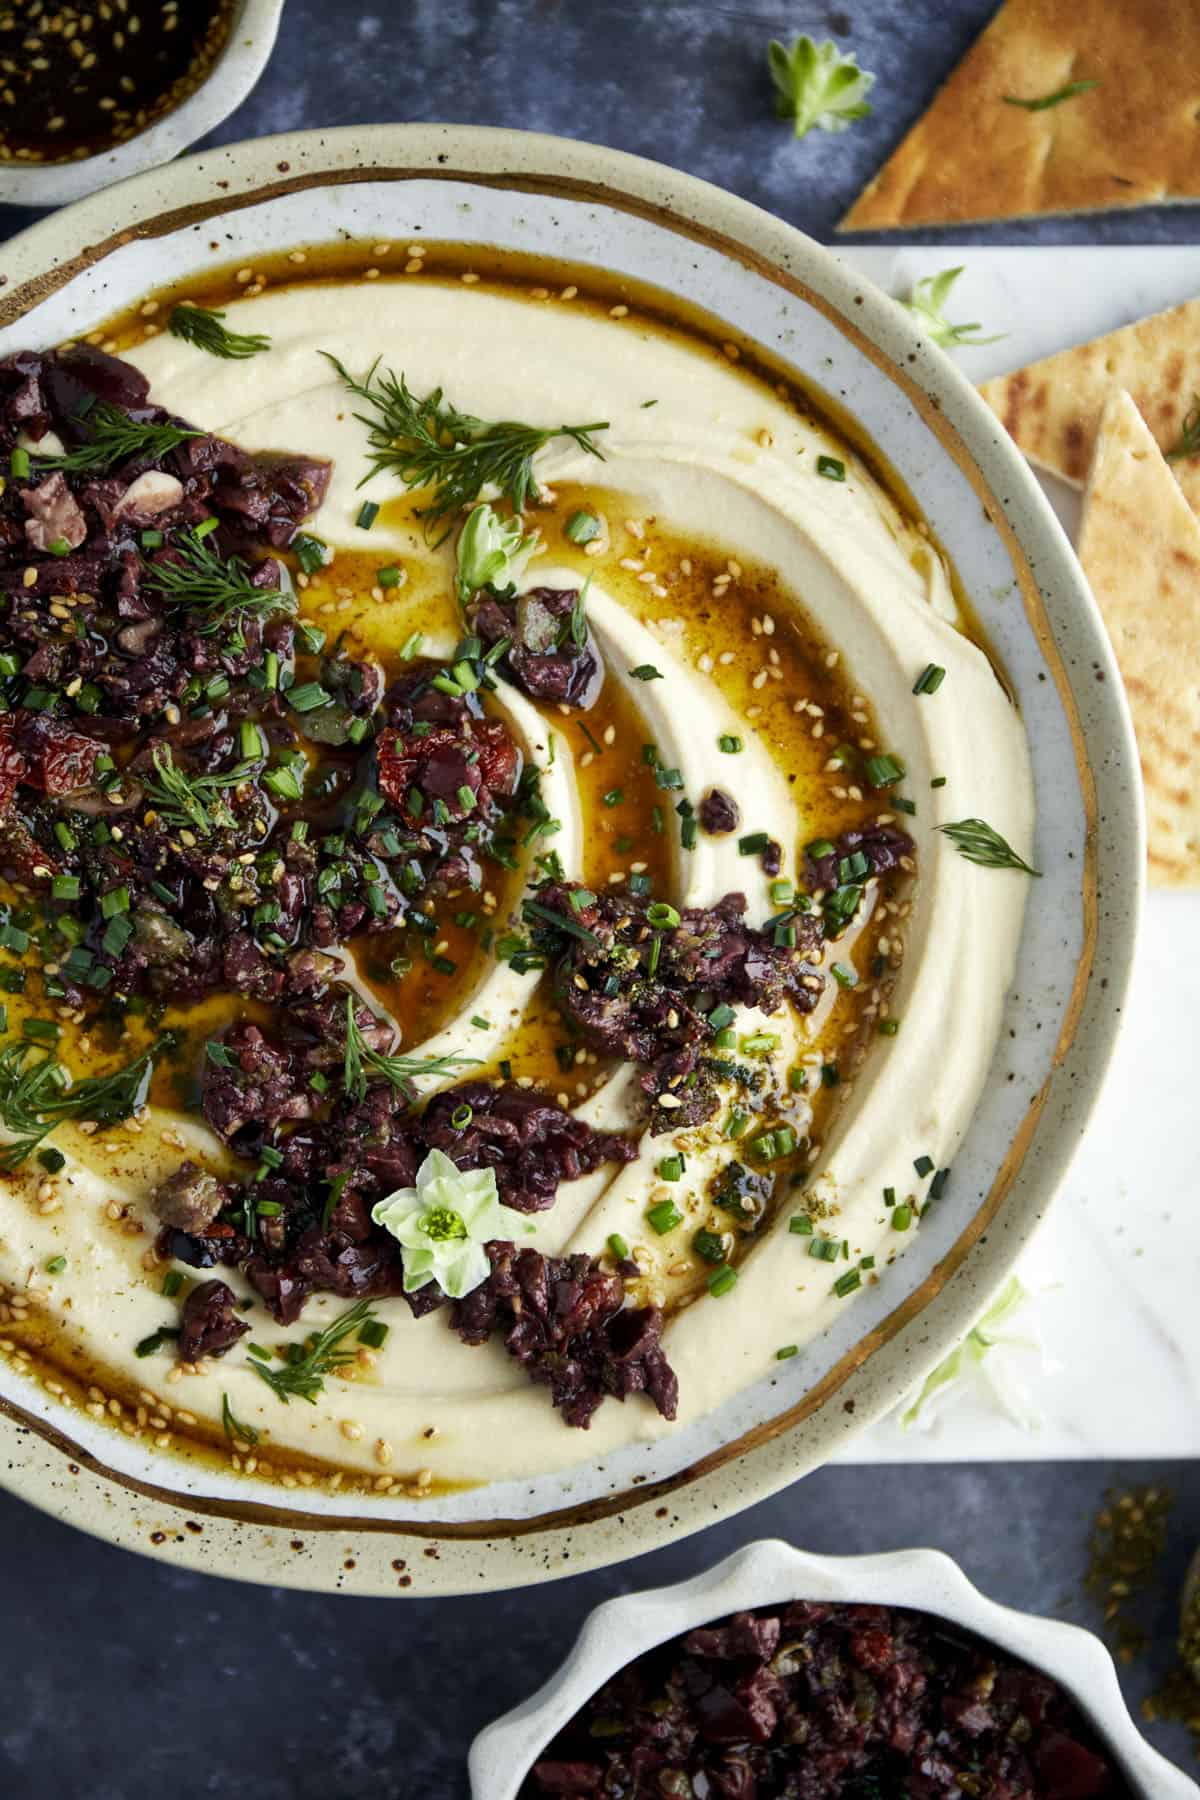 Za’atar Hummus with Olive Tapenade